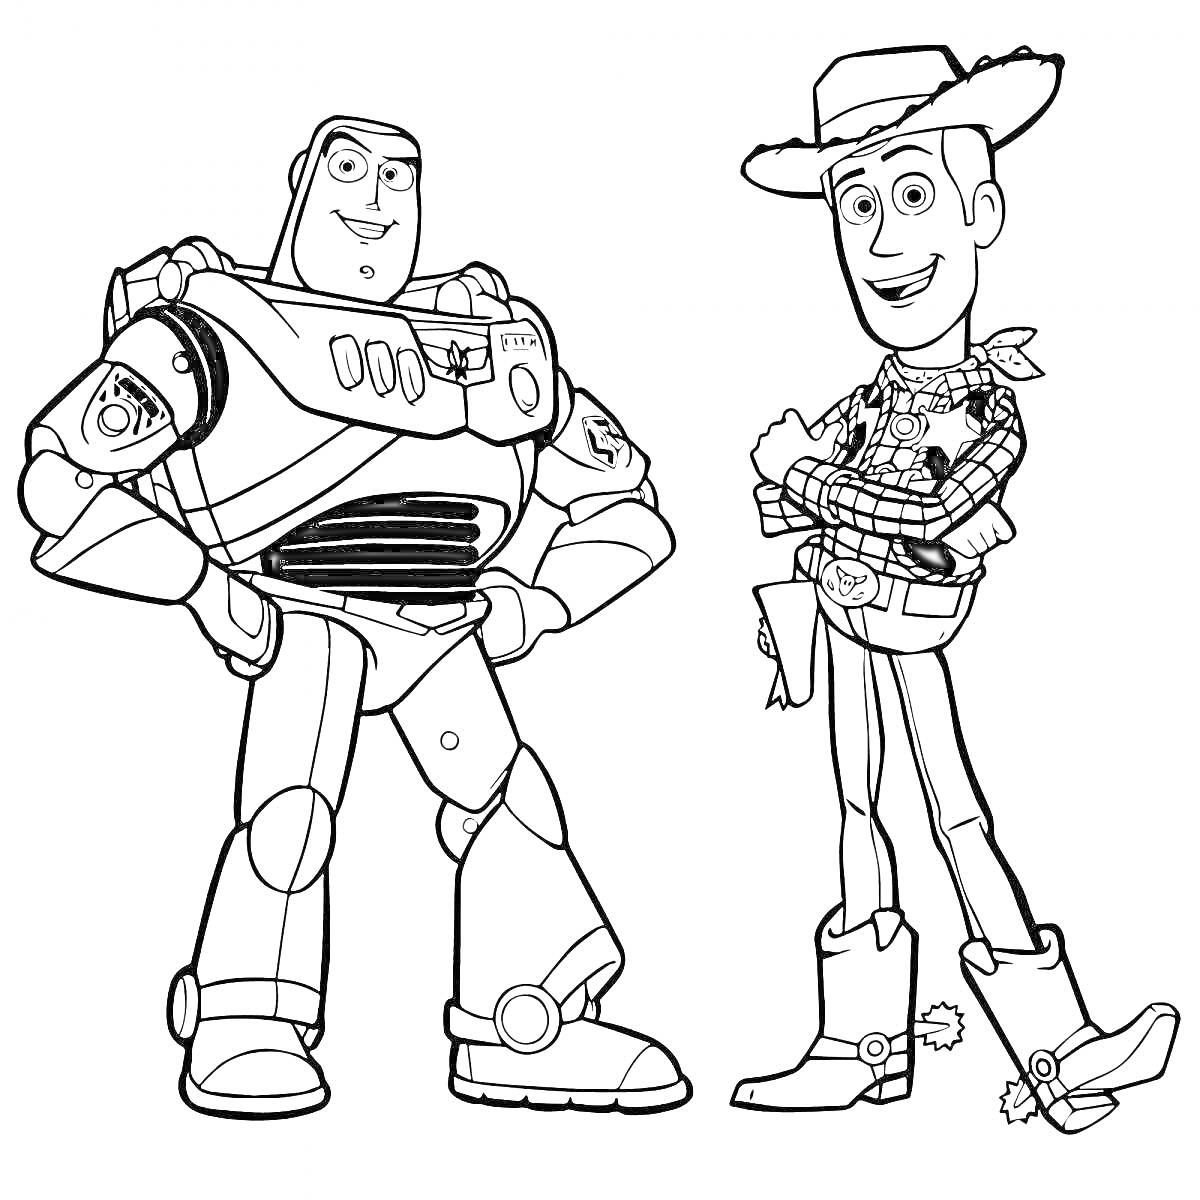 Раскраска Базз Лайтер и Вуди - персонажи из мультфильма, стоящие бок о бок.